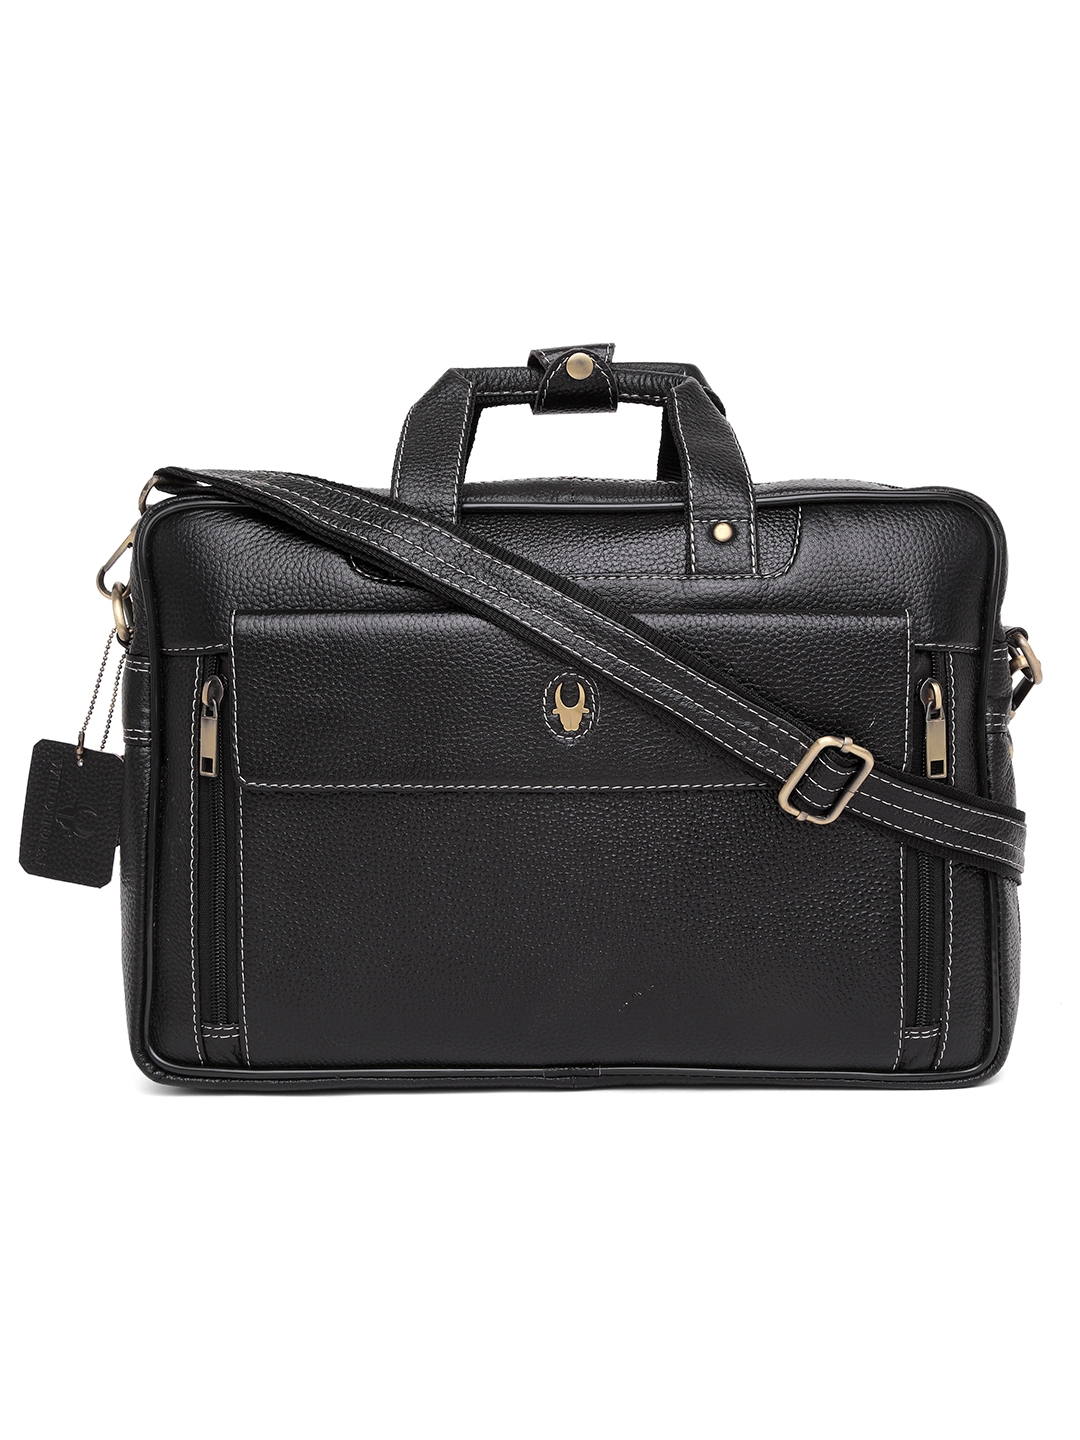 WildHorn 100% Genuine Leather Black Laptop Bag for Men